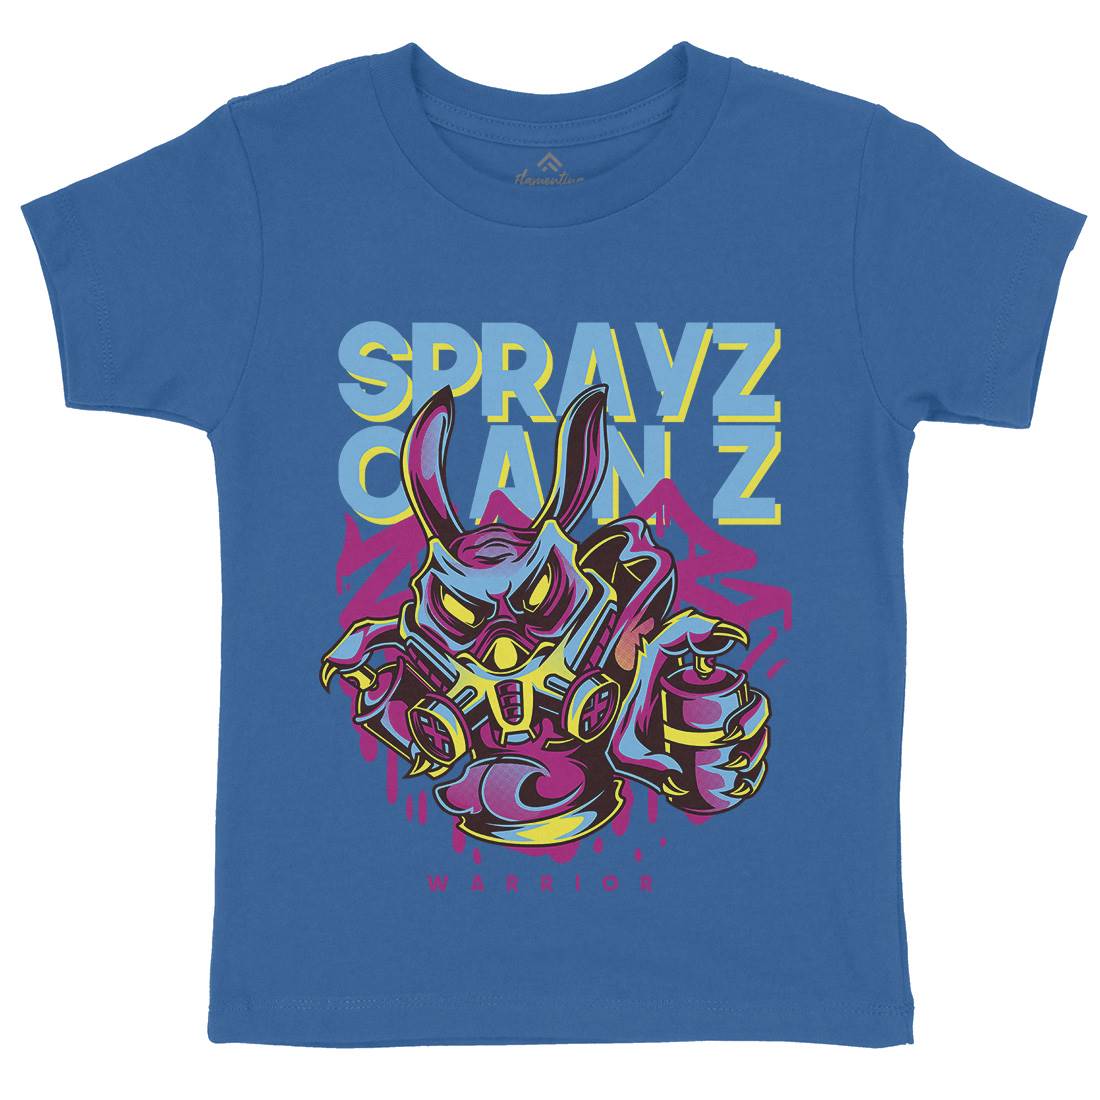 Spray Cans Kids Crew Neck T-Shirt Graffiti D833